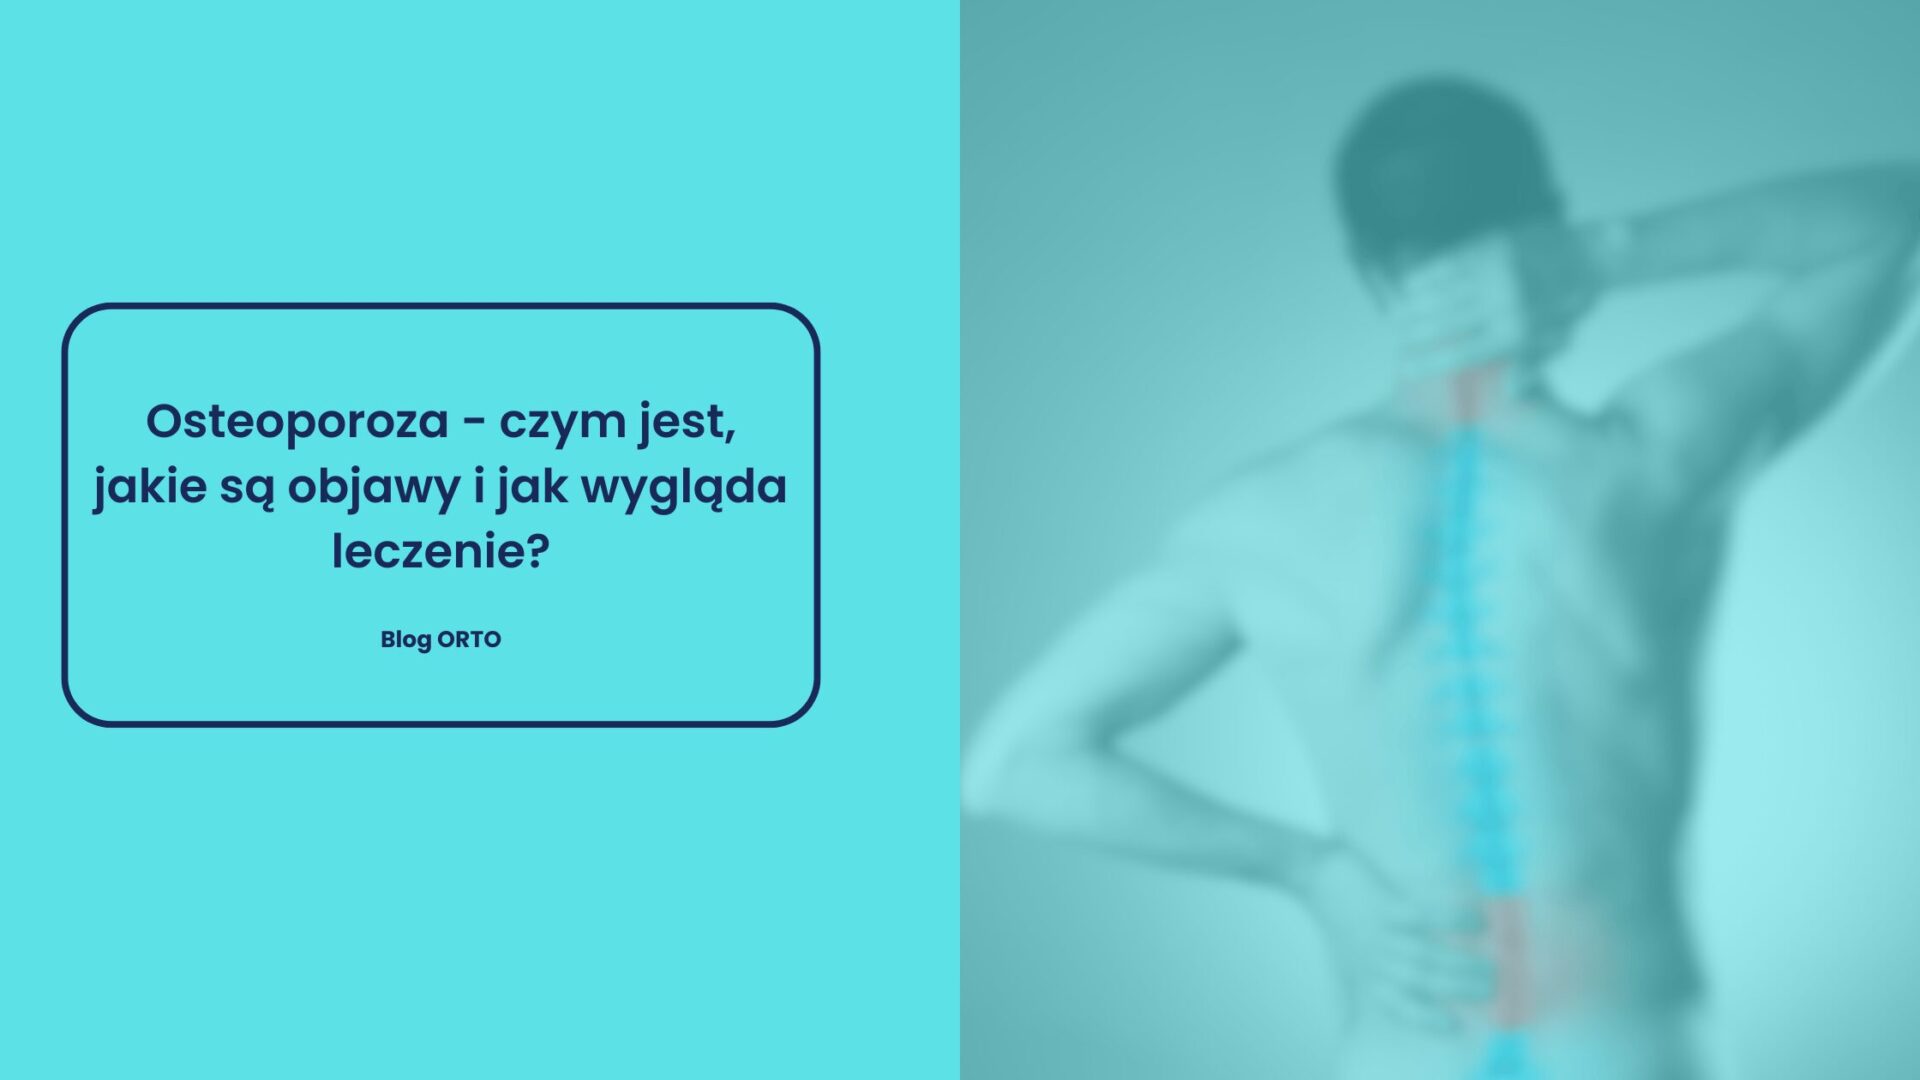 Osteoporoza - czym jest, jakie są objawy i jak wygląda leczenie? - blog orto.pl